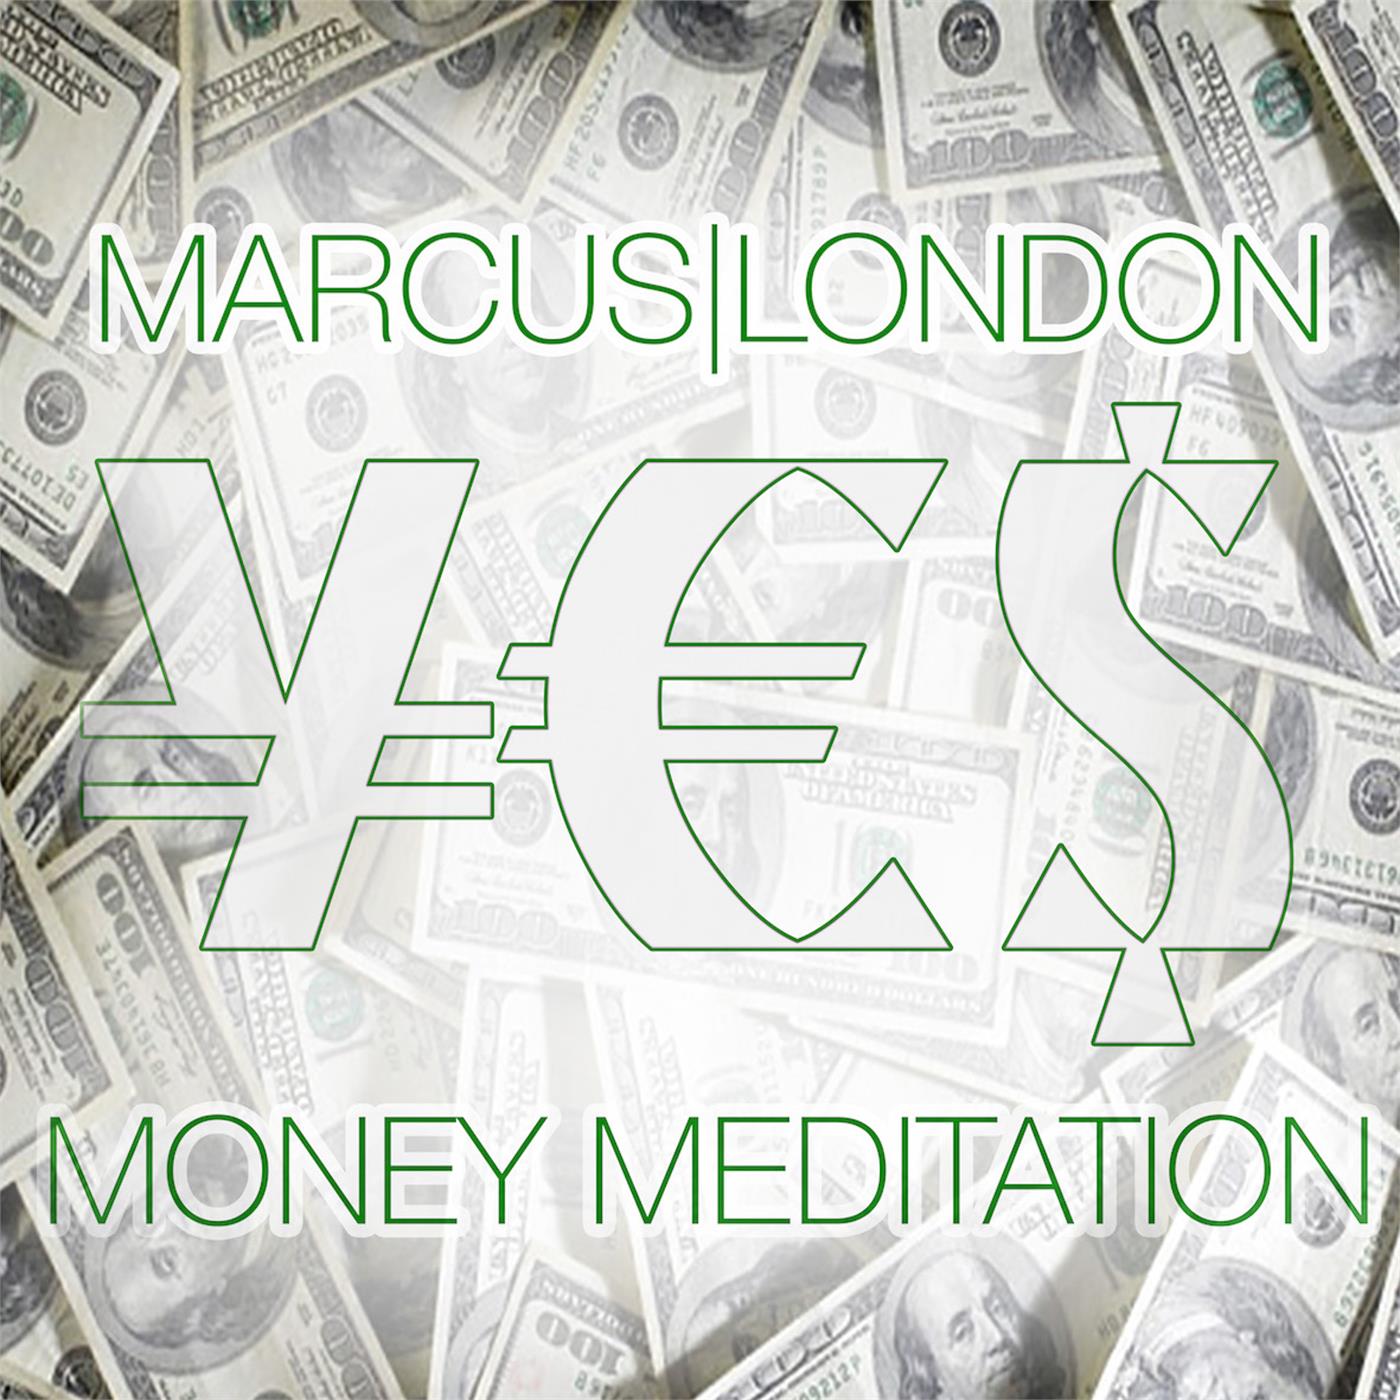 Yes Money Meditation